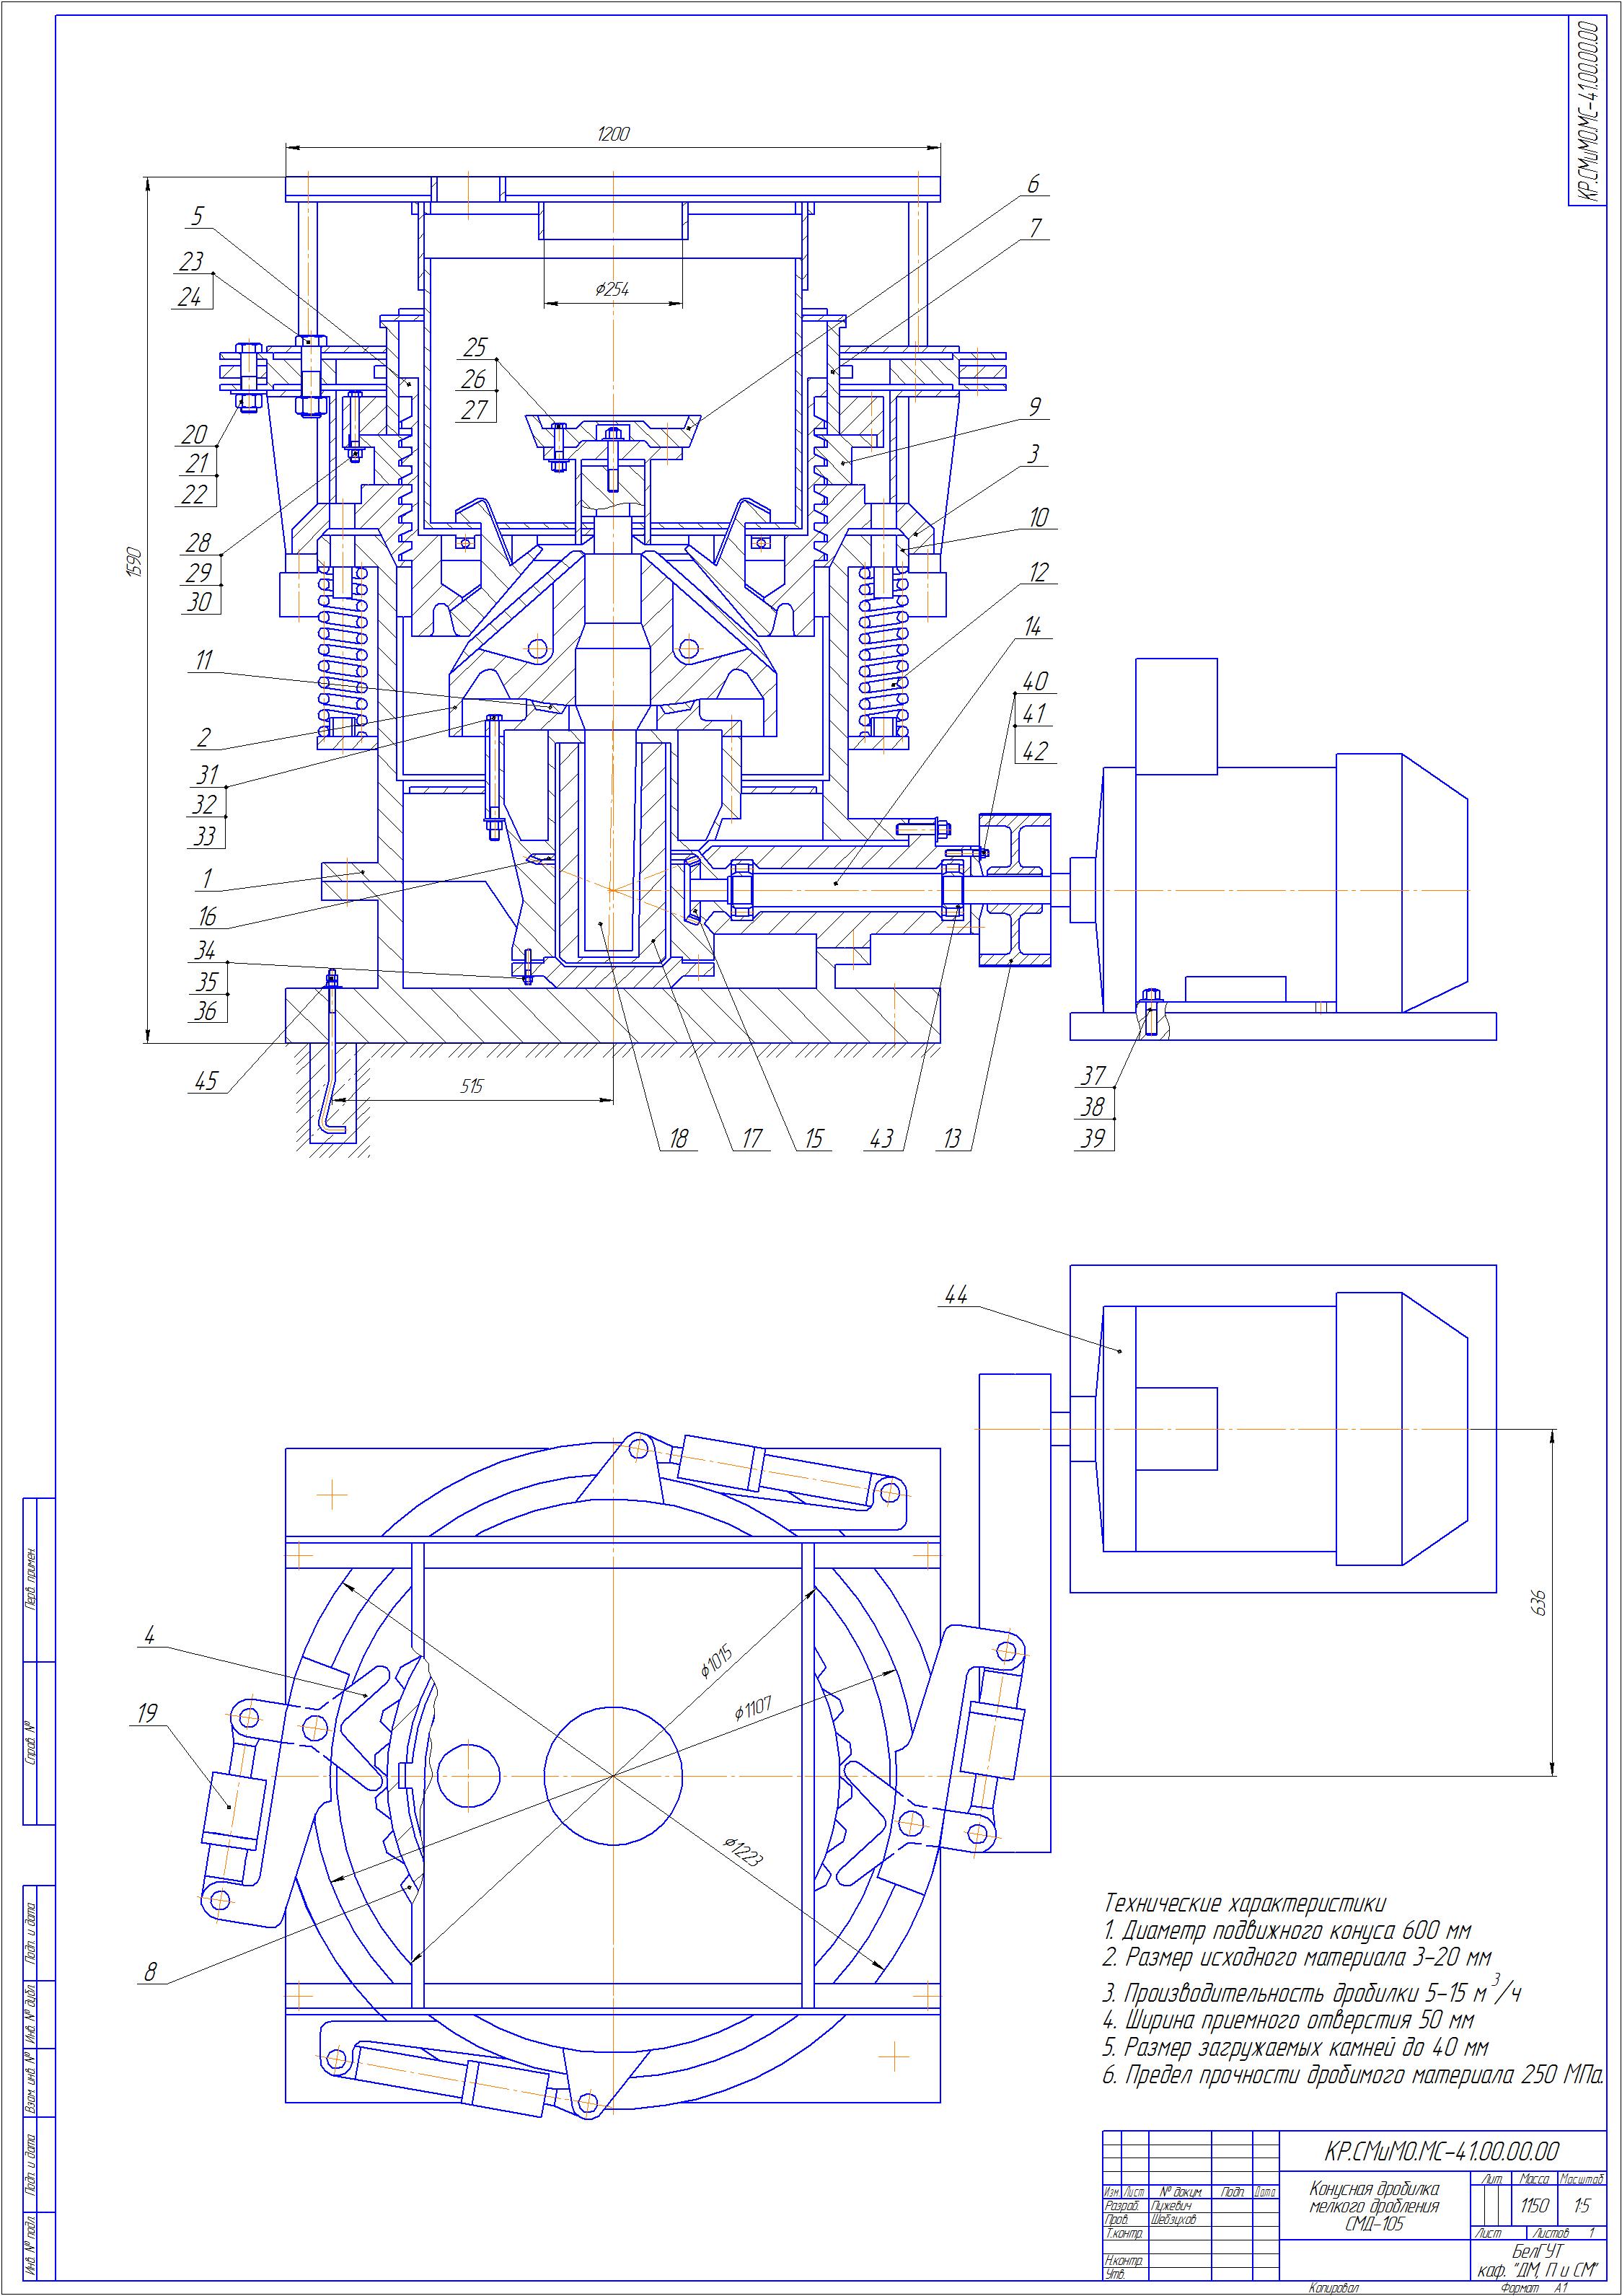 Курсовая работа: Разработка технического предложения на модернизацию конусной дробилки ККД-1200